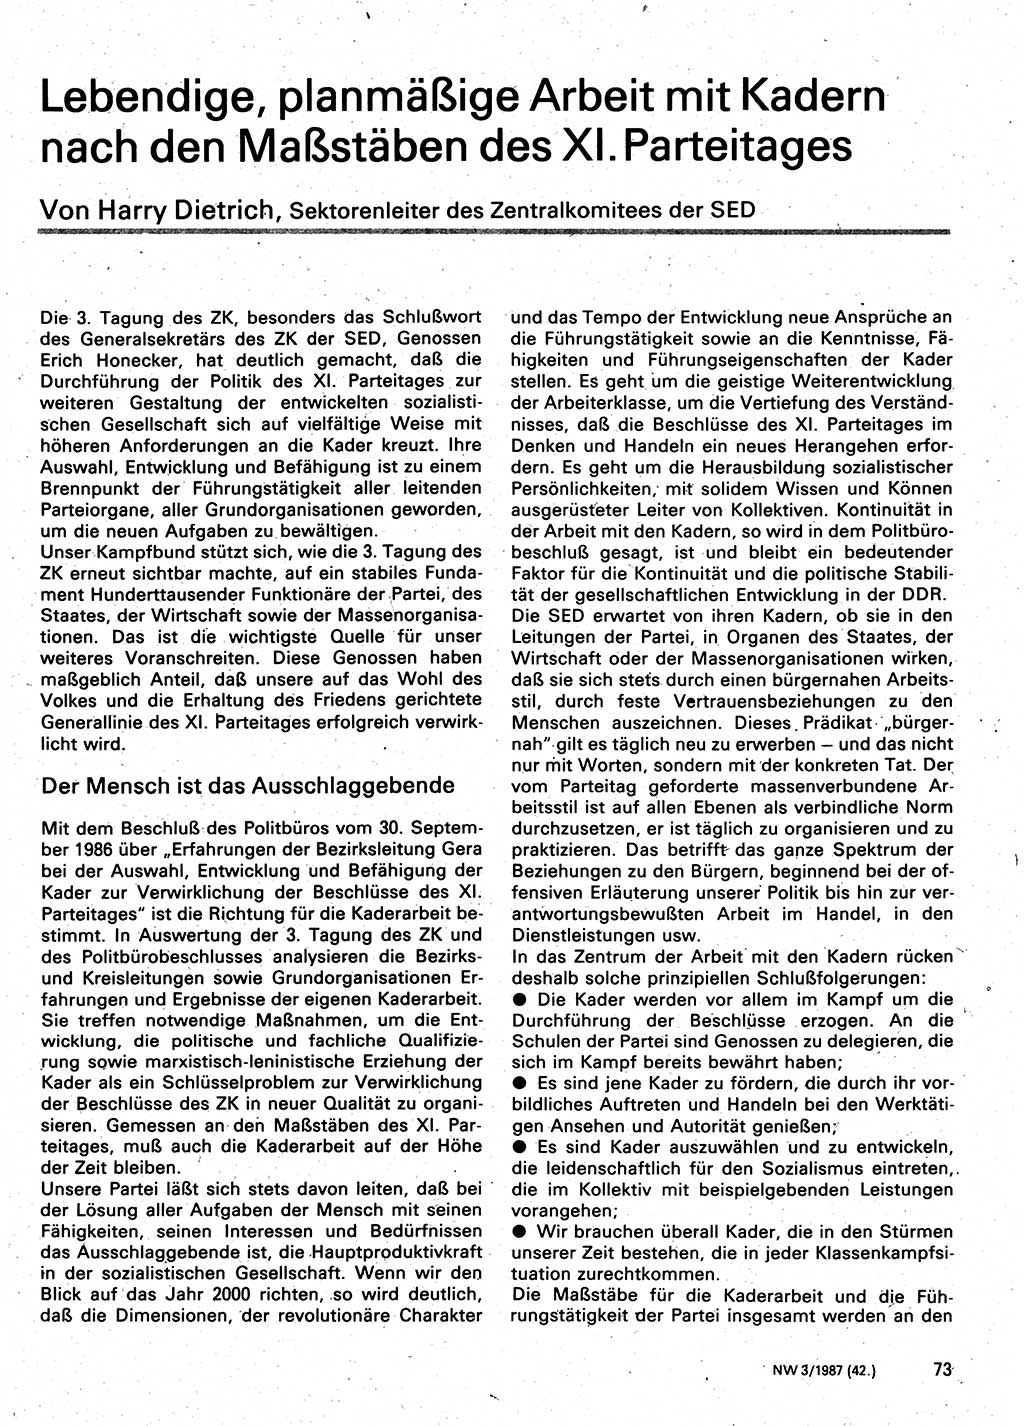 Neuer Weg (NW), Organ des Zentralkomitees (ZK) der SED (Sozialistische Einheitspartei Deutschlands) für Fragen des Parteilebens, 42. Jahrgang [Deutsche Demokratische Republik (DDR)] 1987, Seite 73 (NW ZK SED DDR 1987, S. 73)